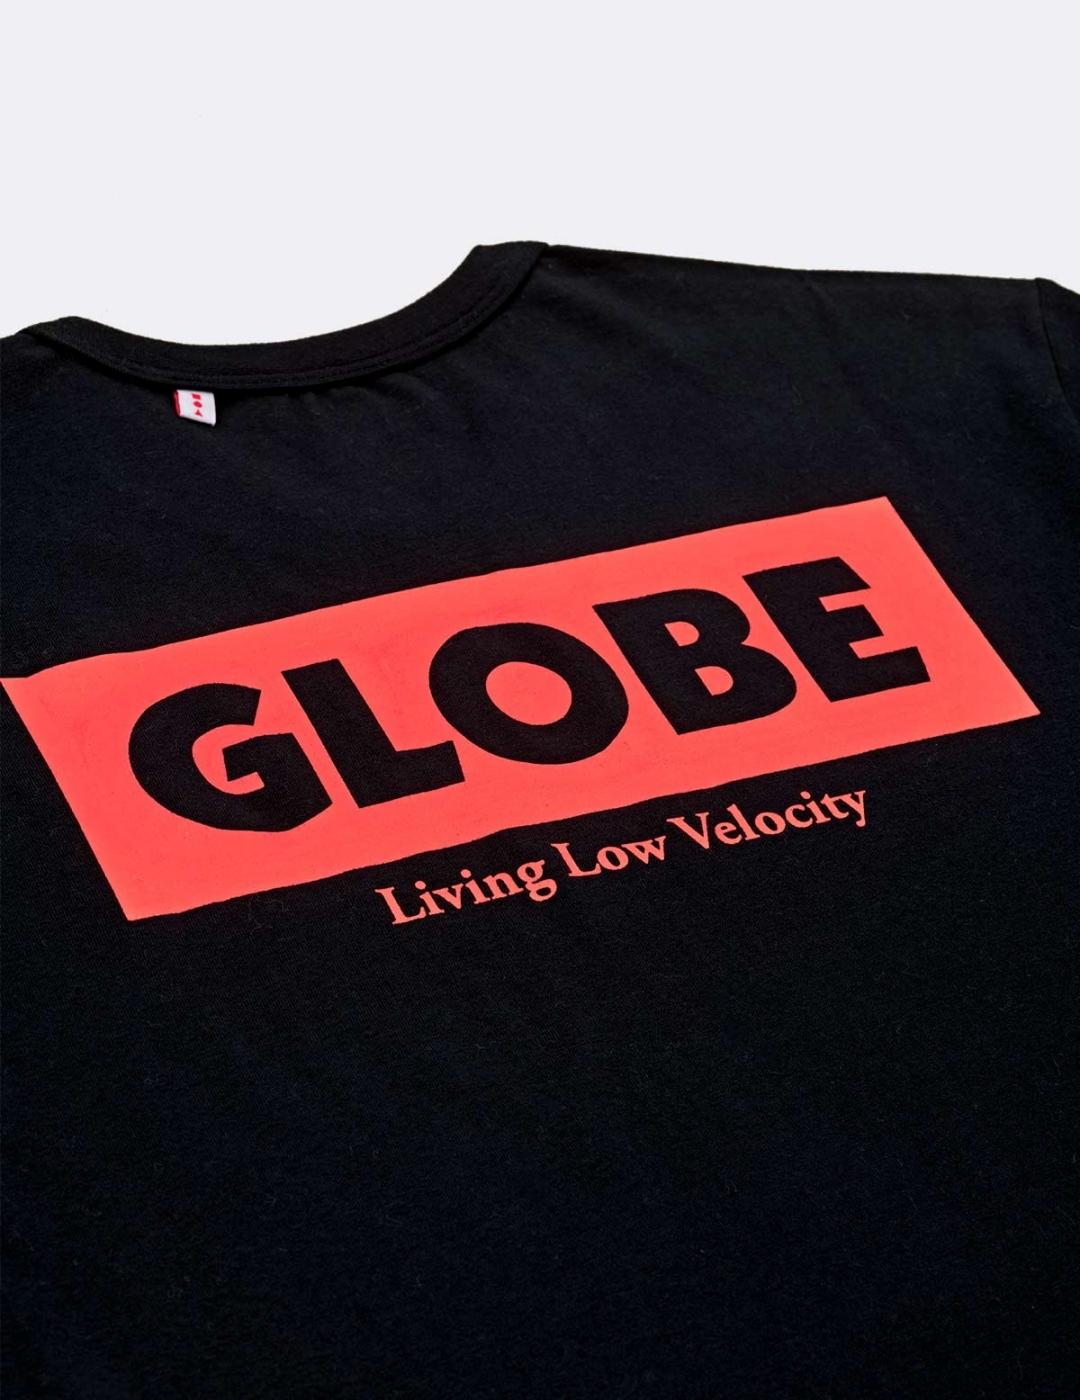 Camiseta GLOBE LIVING LOW VELOCITY  - Black